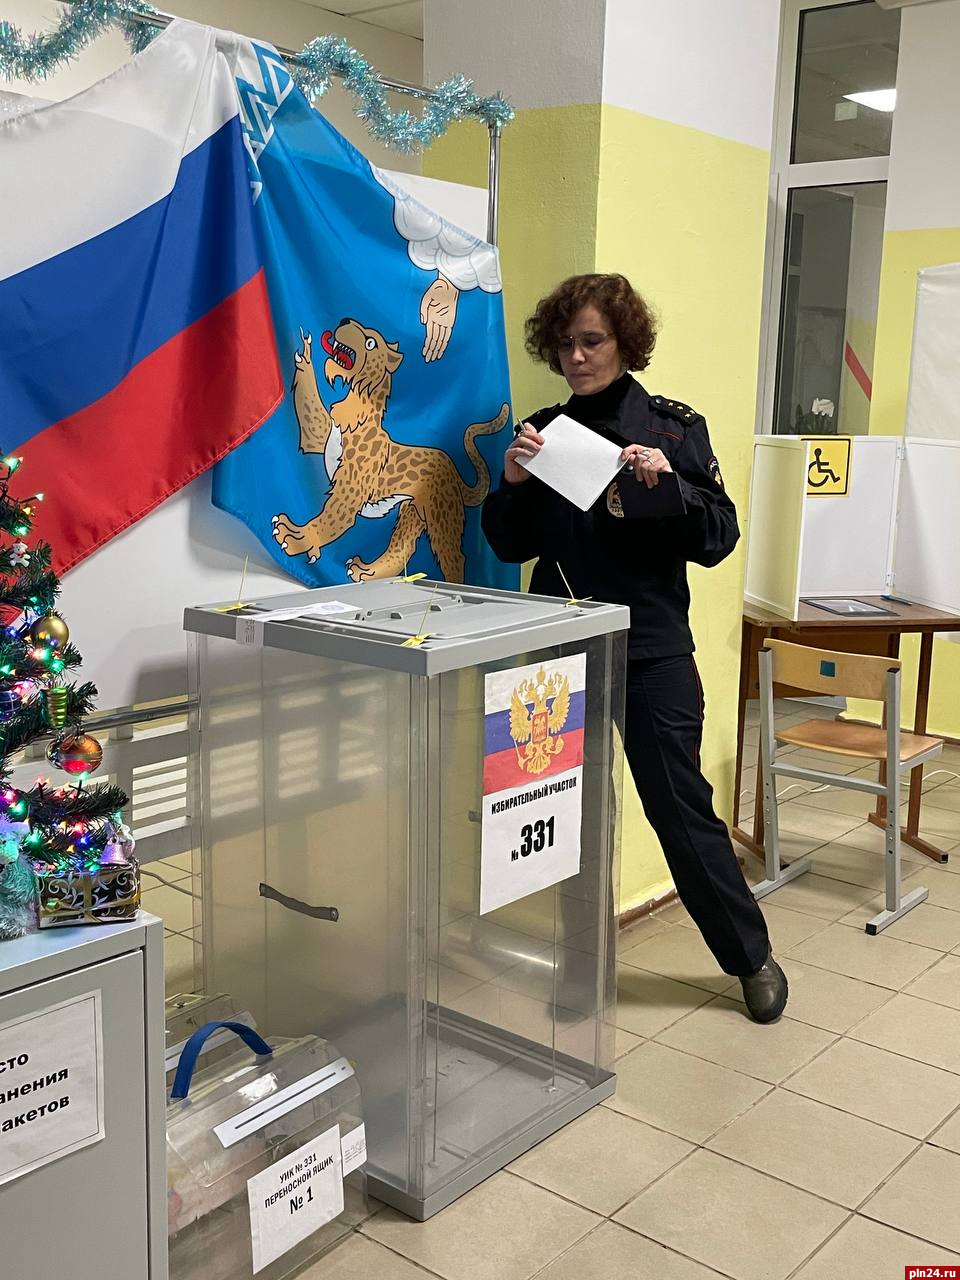 Явка на выборах главы Пушкиногорского района приближается к 25%